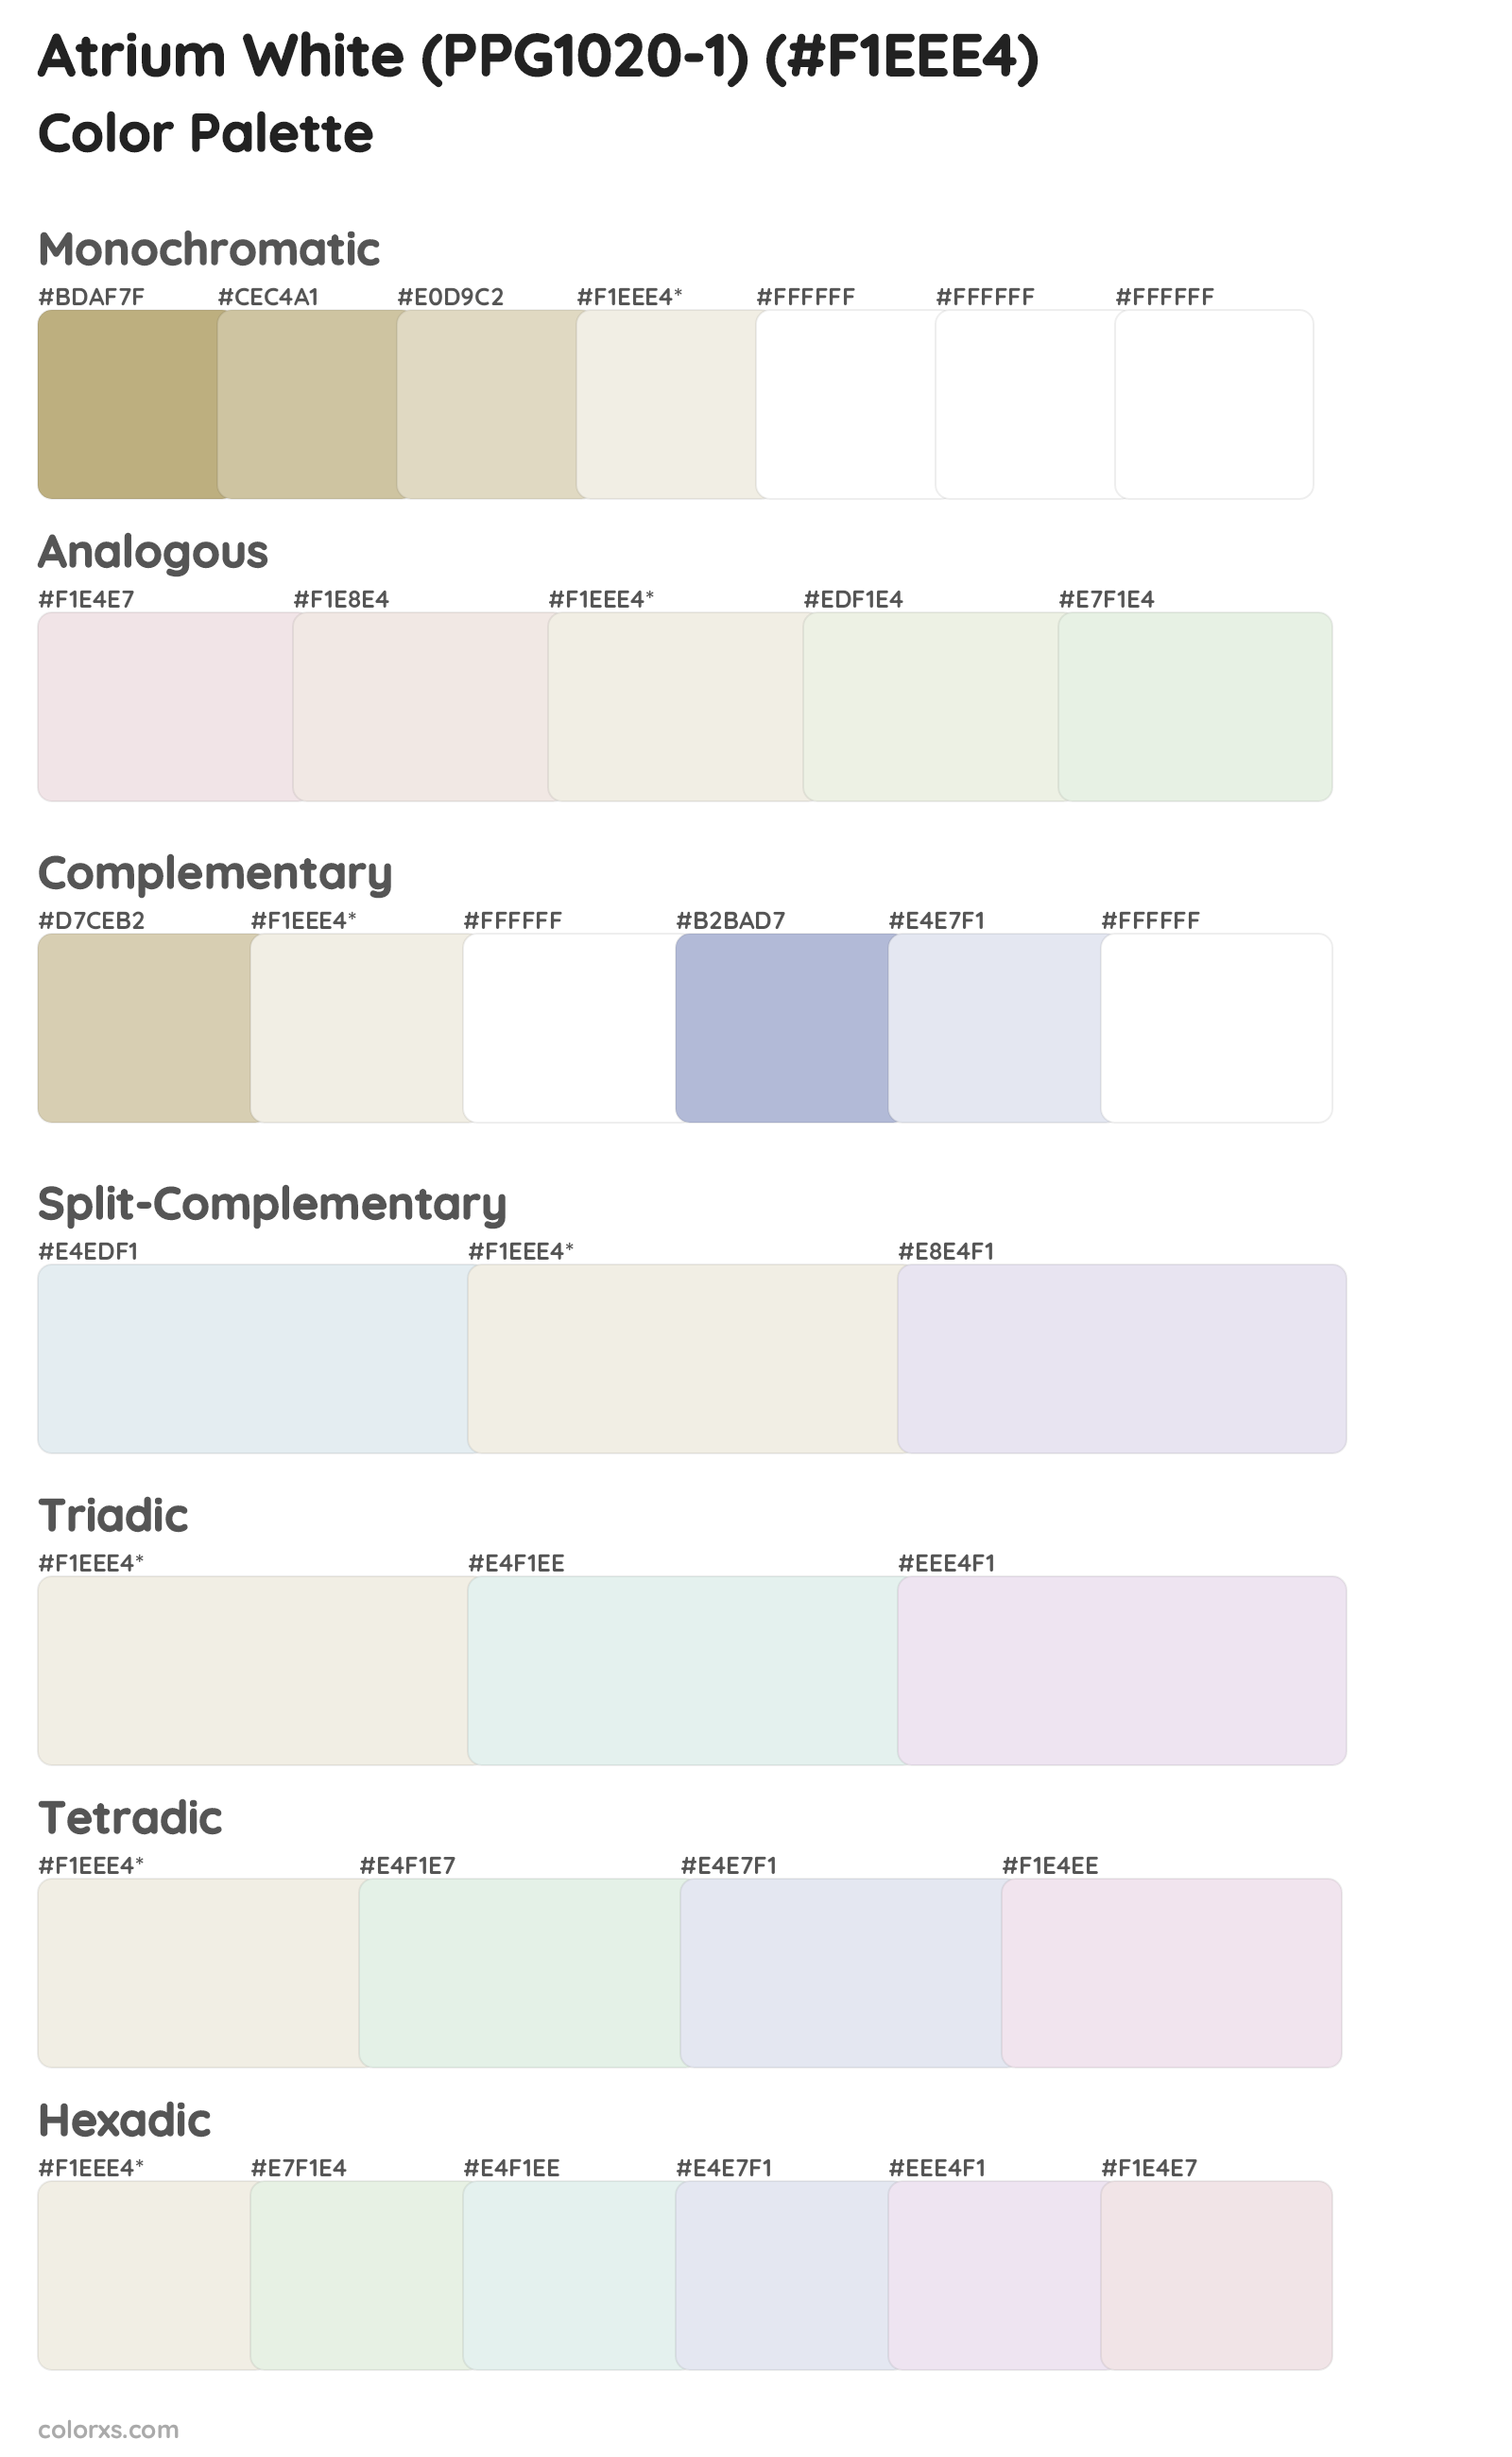 Atrium White (PPG1020-1) Color Scheme Palettes